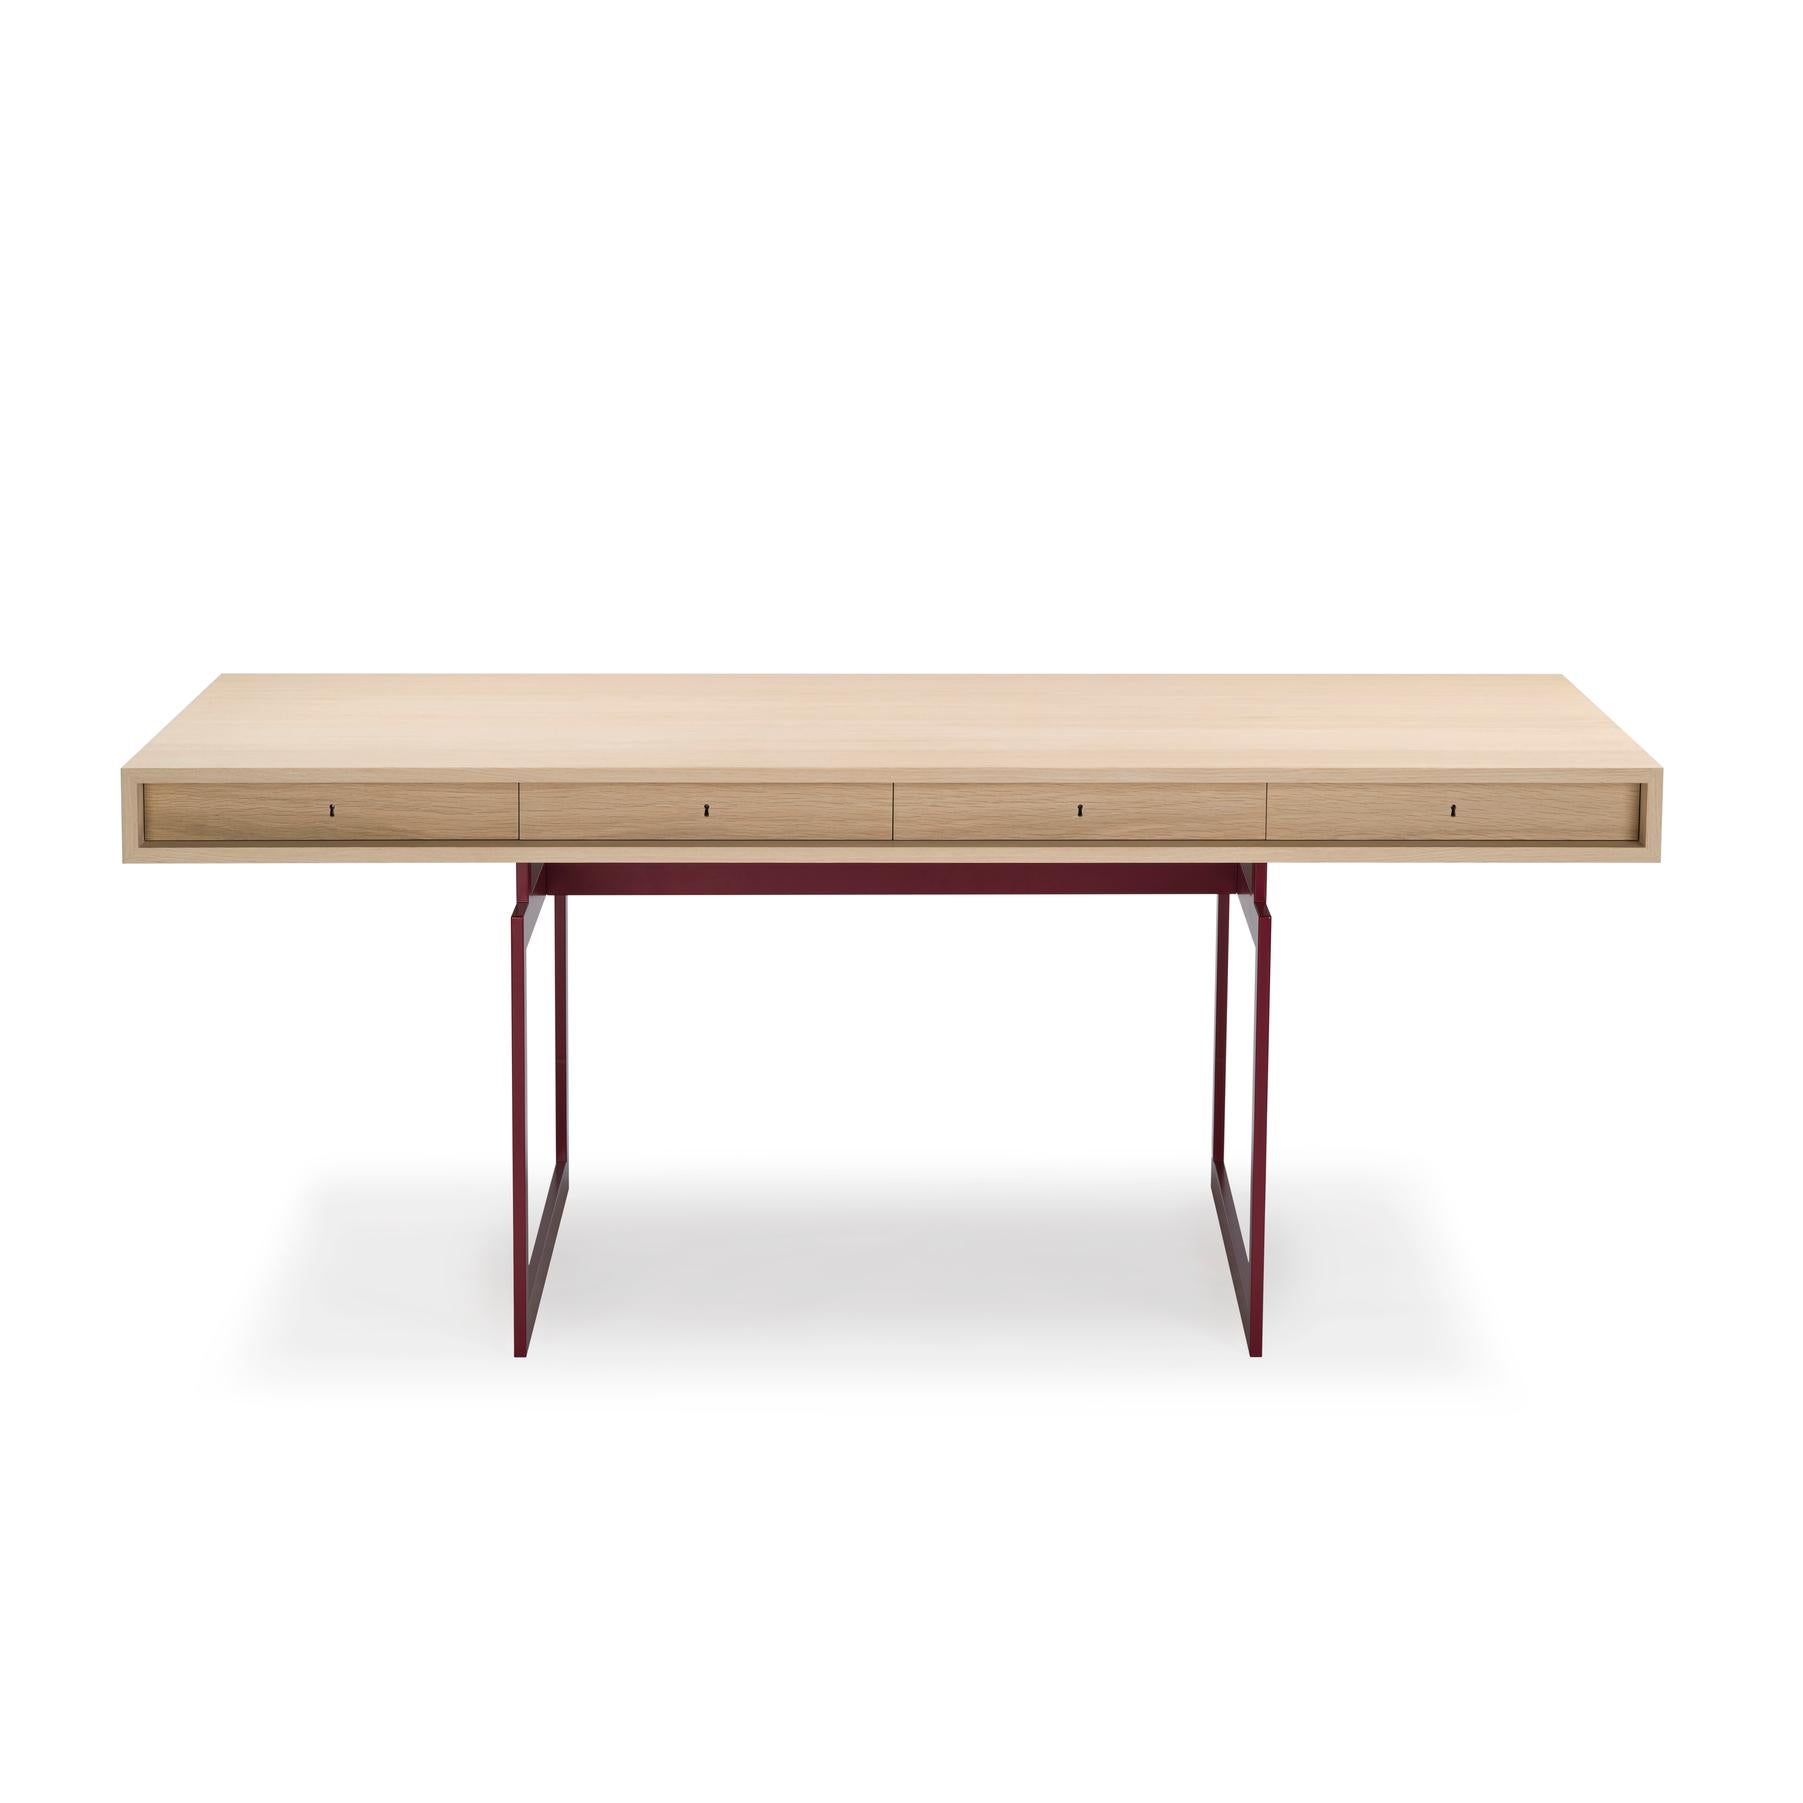 Table conçue par Bodil Kjær en 1959. 

Nous sommes fiers de vous présenter notre première création d'un designer danois. Dans ce cas, l'architecte, professeur et designer danois Bodil Kjær. Ce bureau emblématique, conçu en 1959, était le premier